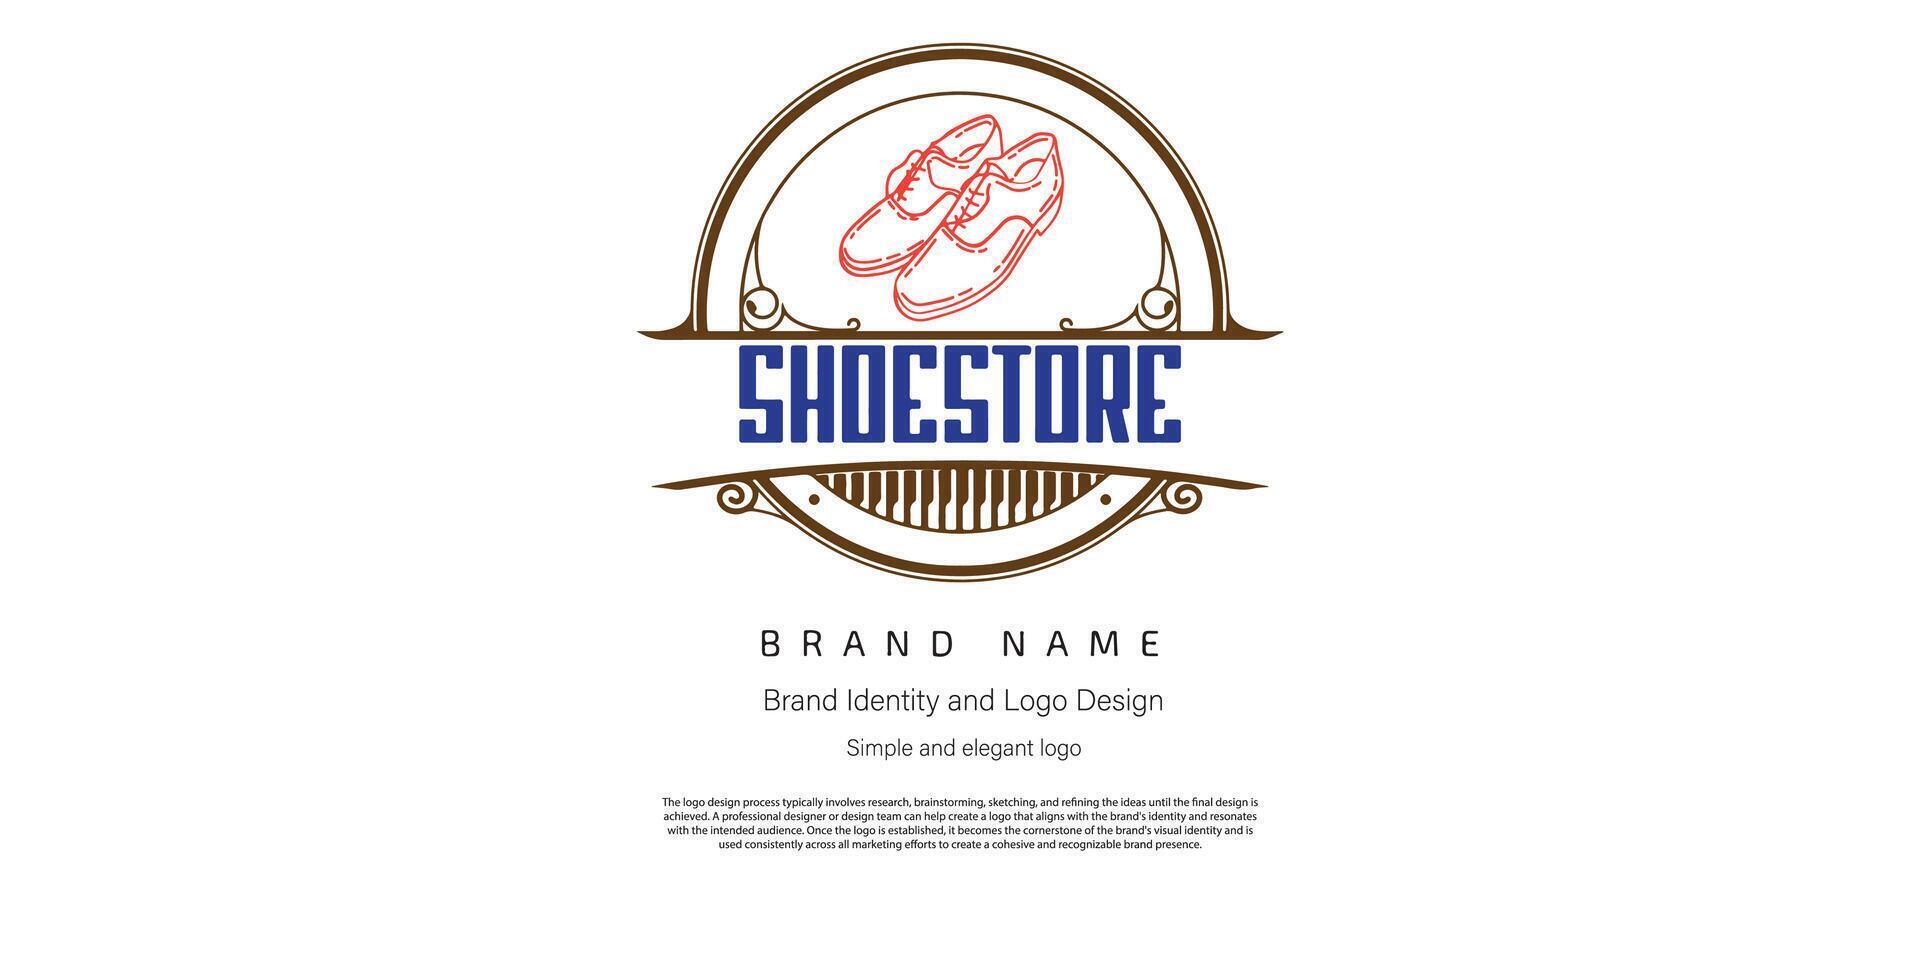 shoe store logo design for e commerce or logo designer vector